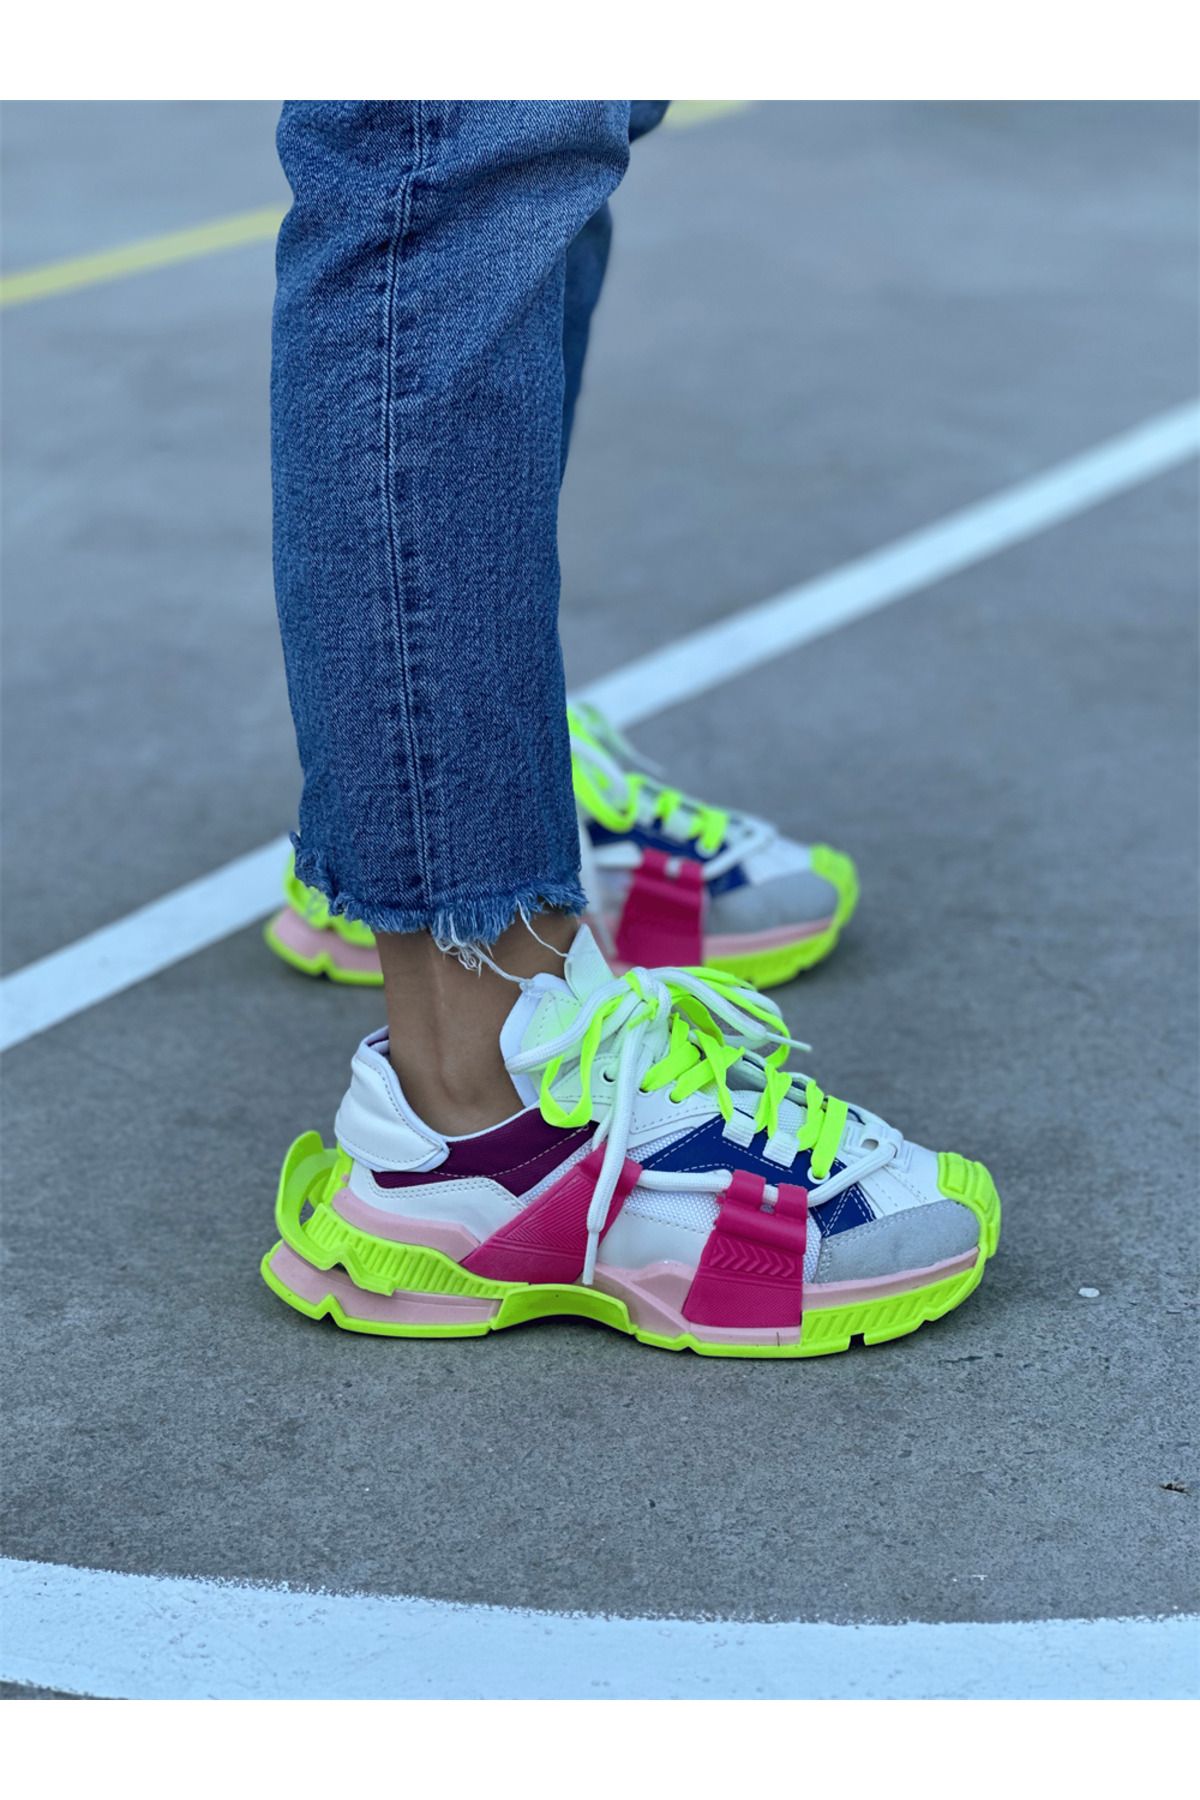 SHOEMARK Poppy Beyaz Çift Bağcık Detaylı Kadın Spor Ayakkabı